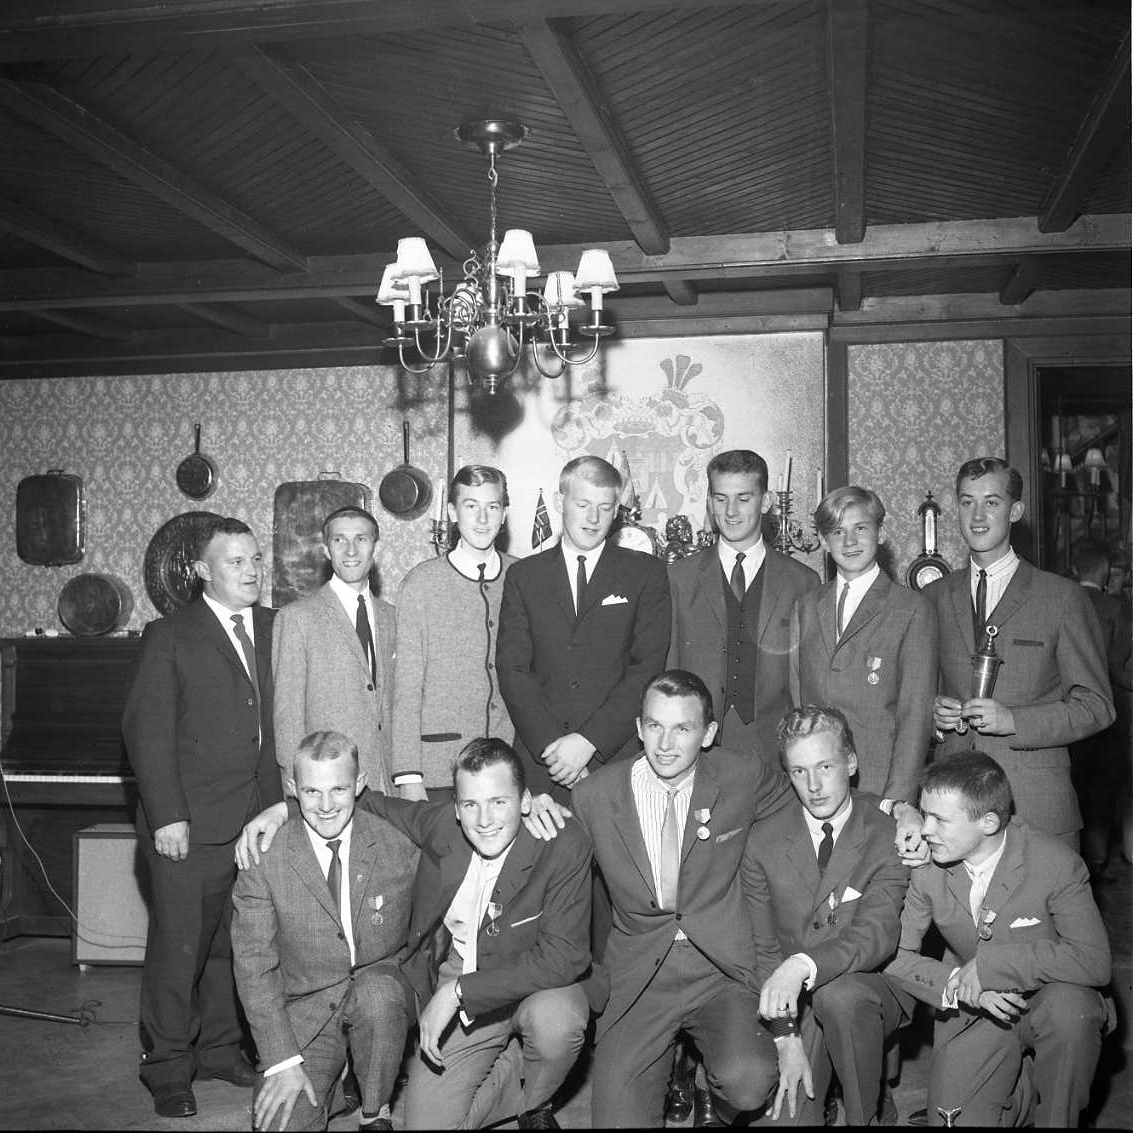 Gruppbild med tolv unga män, några med medalj på bröstet andra med pokal i händerna. Längst fram till höger sitter möjligen Lars-Göran Andersson. Fotografi i samband med årsmöte för Gränna AIS.